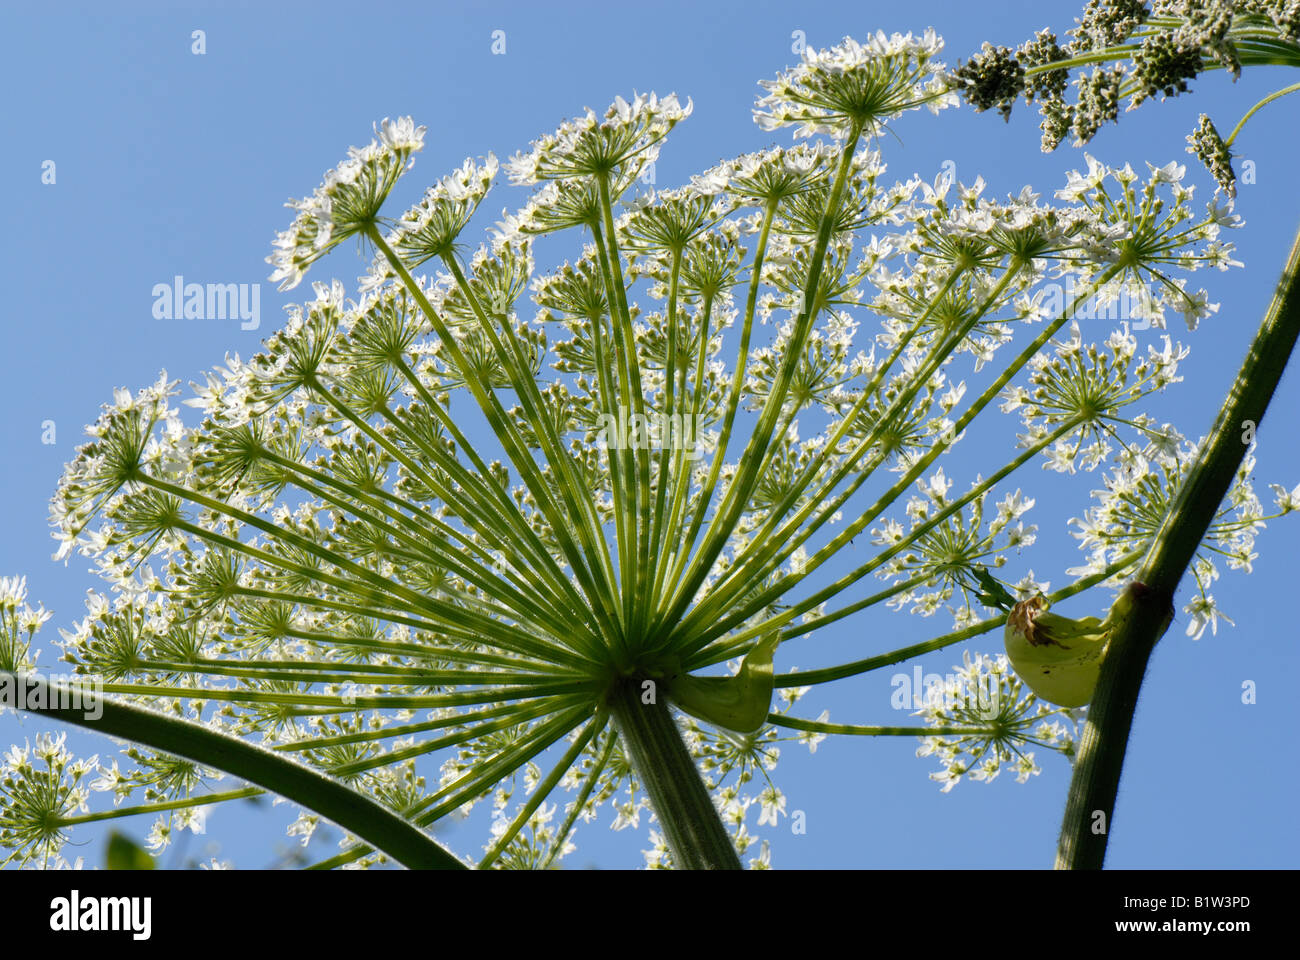 Giant hogweed Heracleum mantegazzianum flowering umbel against blue sky Stock Photo